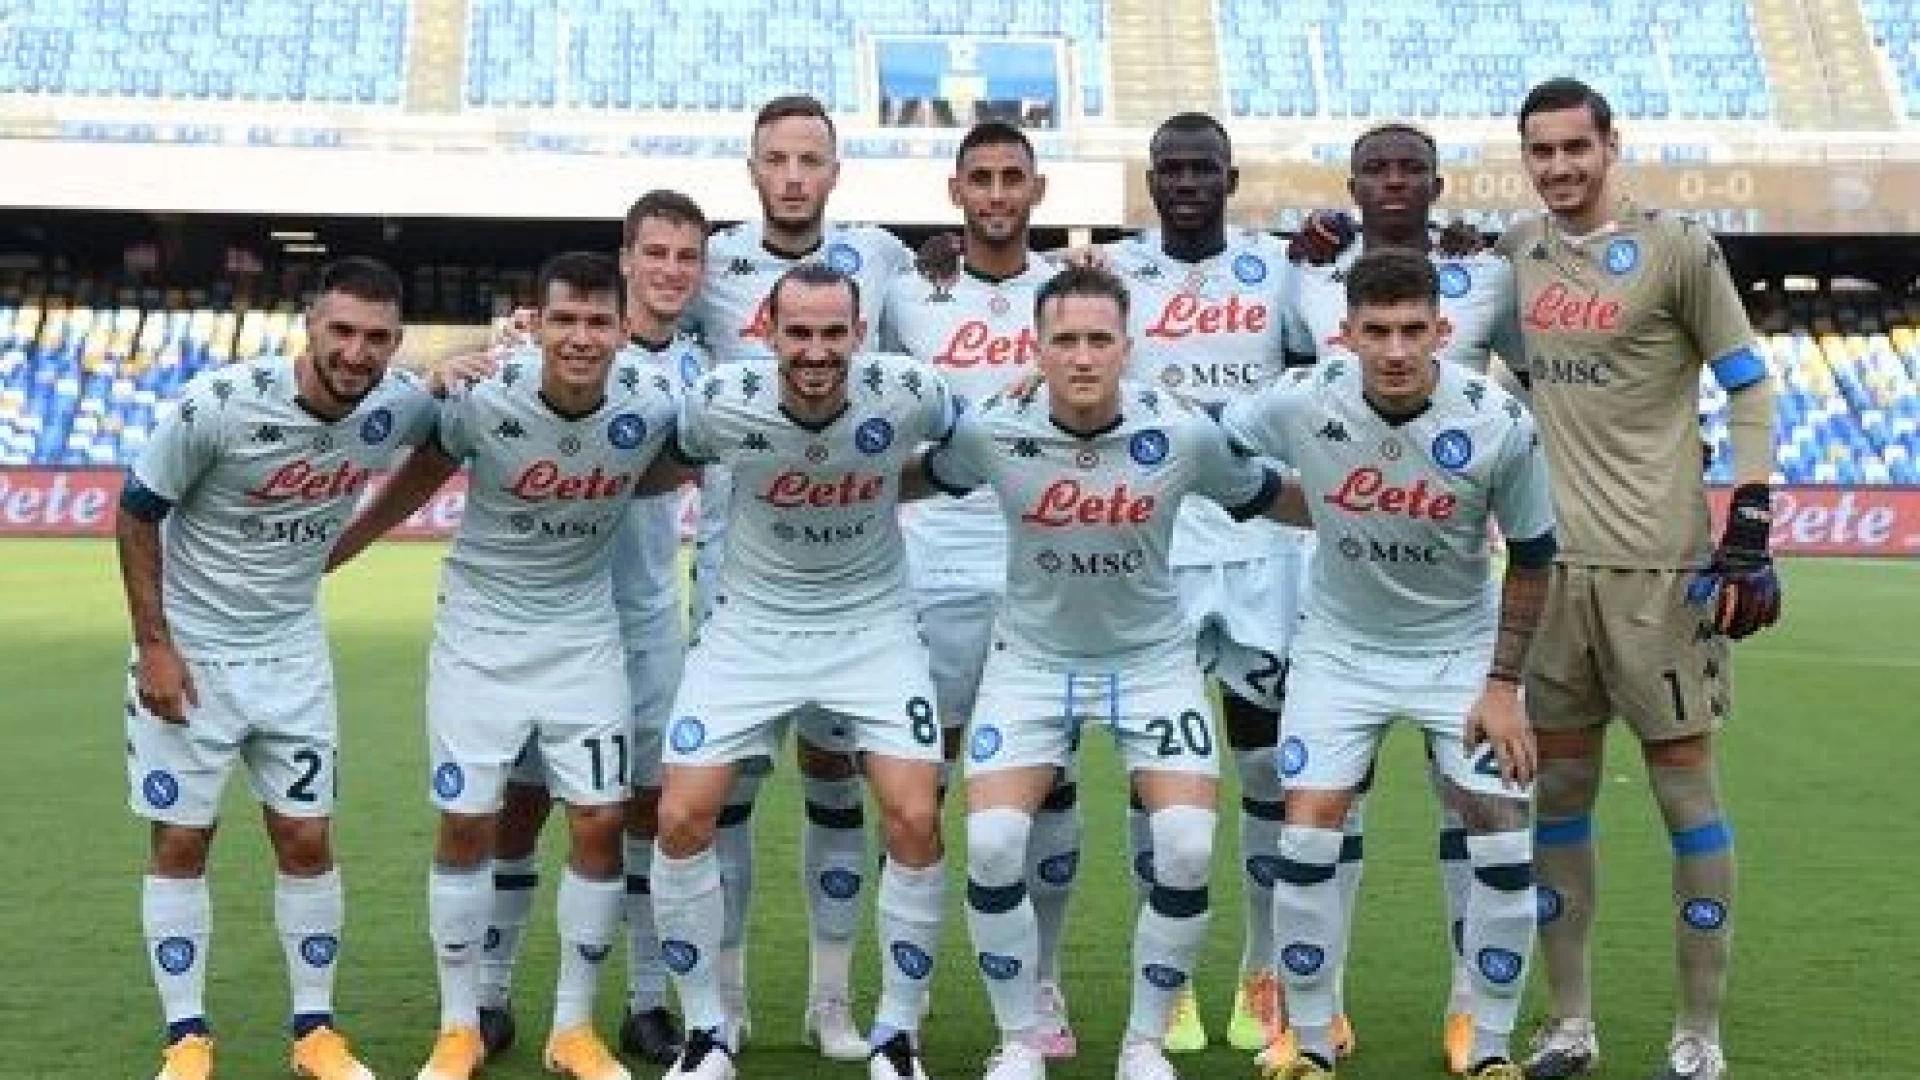 Napoli - Pescara 4-0, guarda la sintesi a cura della nostra redazione sportiva